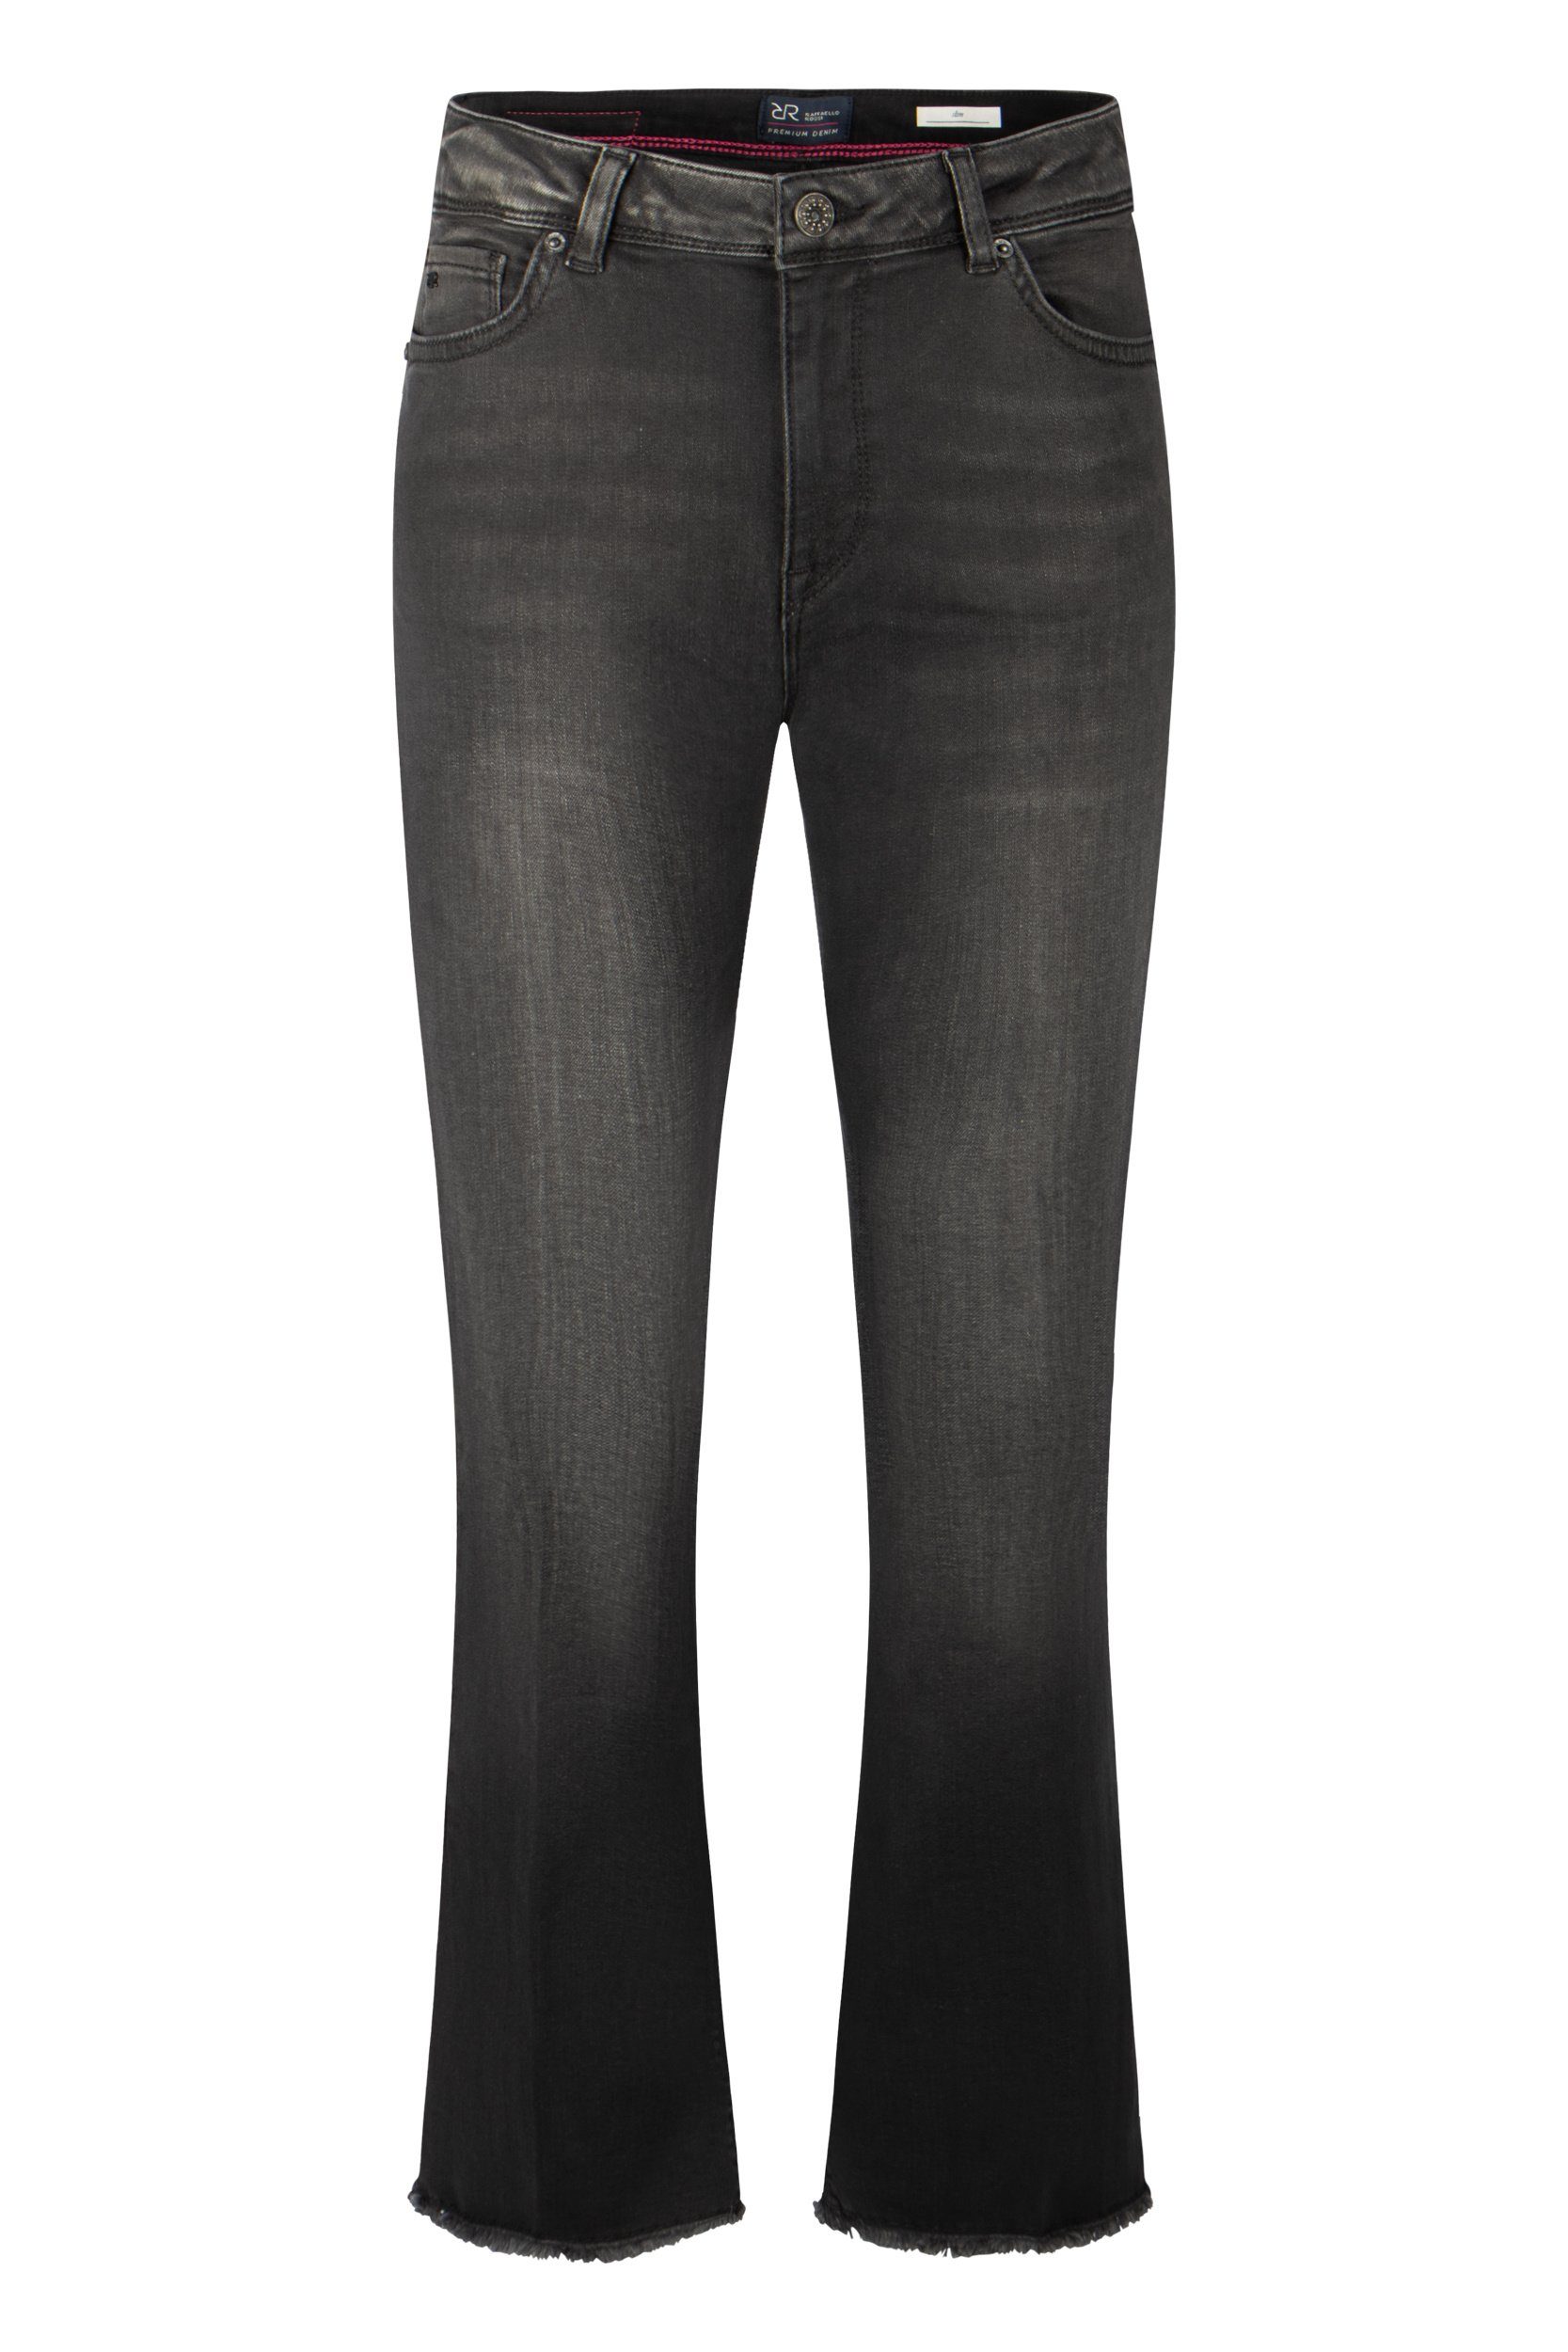 Raffaello Rossi Slim-fit-Jeans Vic 6/8 Cropped